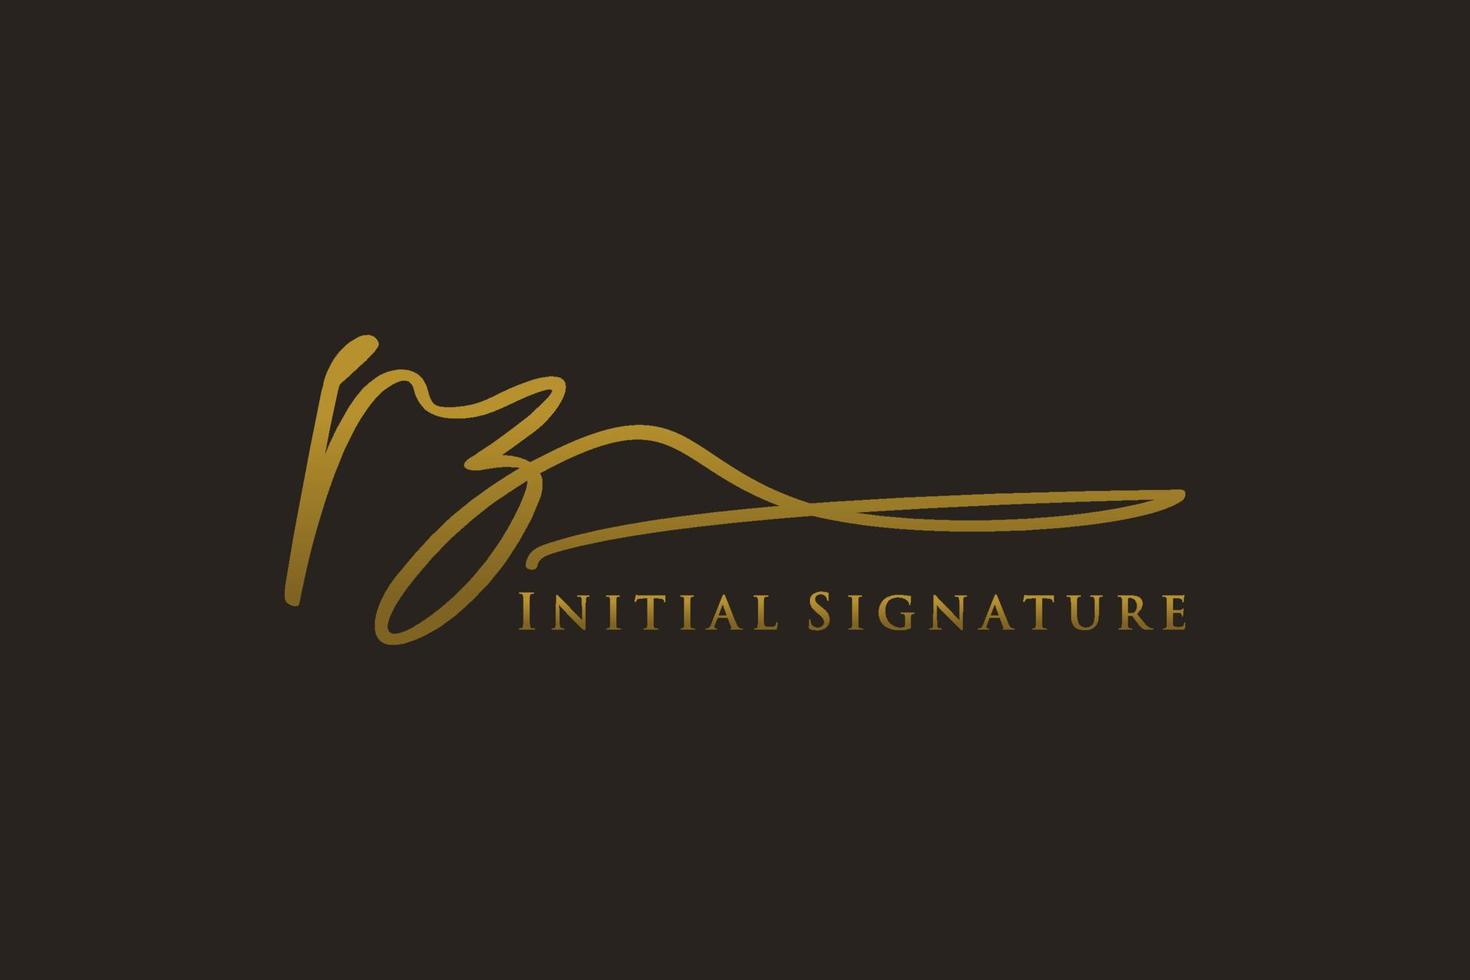 plantilla de logotipo de firma de letra pz inicial logotipo de diseño elegante. ilustración de vector de letras de caligrafía dibujada a mano.